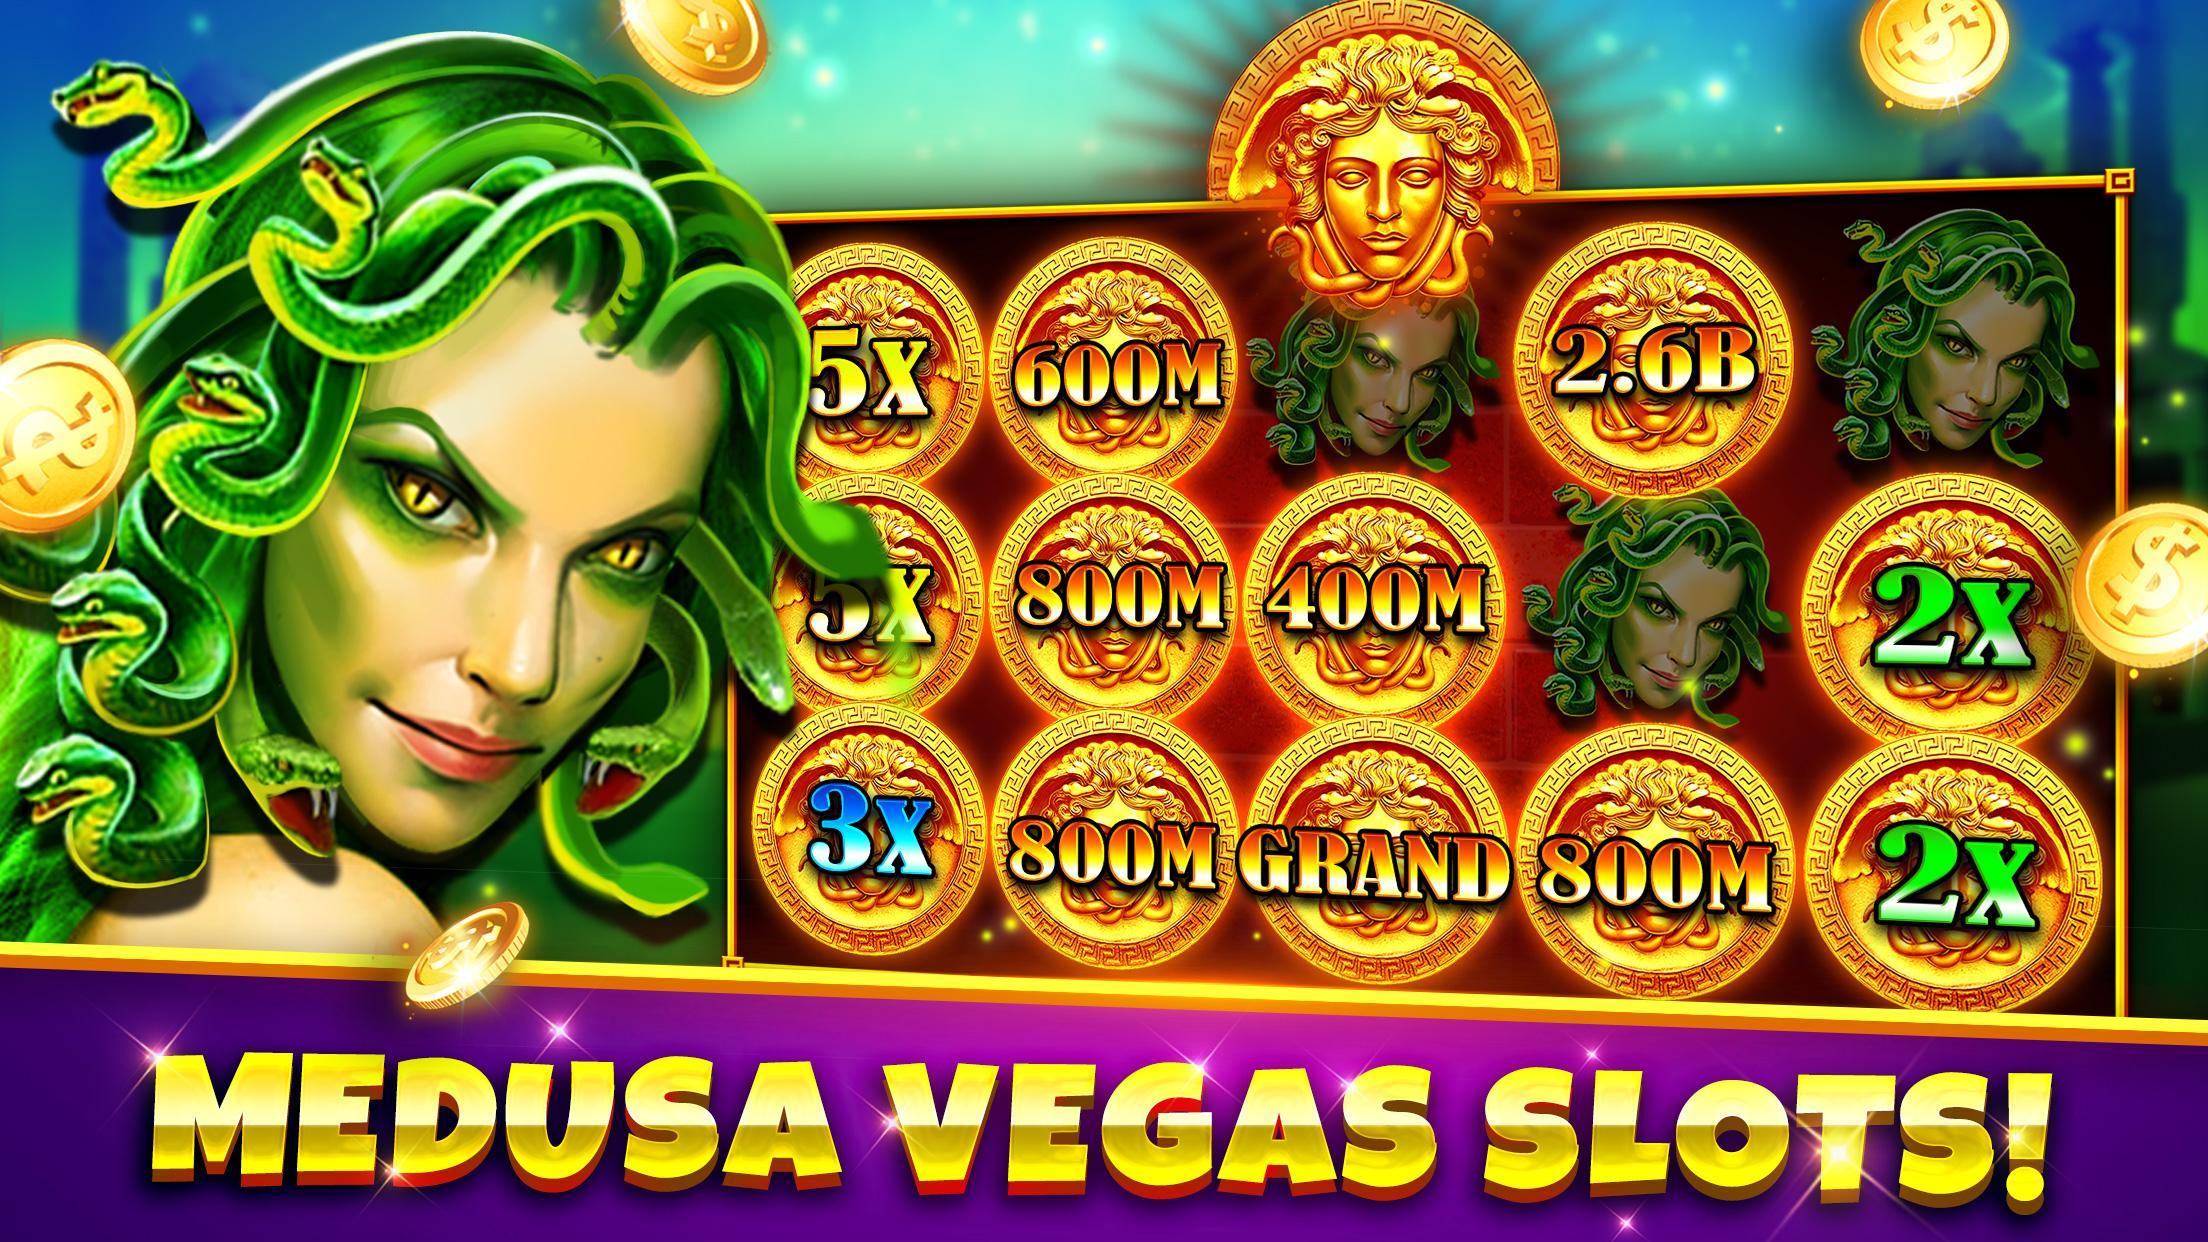 Casino online game slot betcity отзывы работников